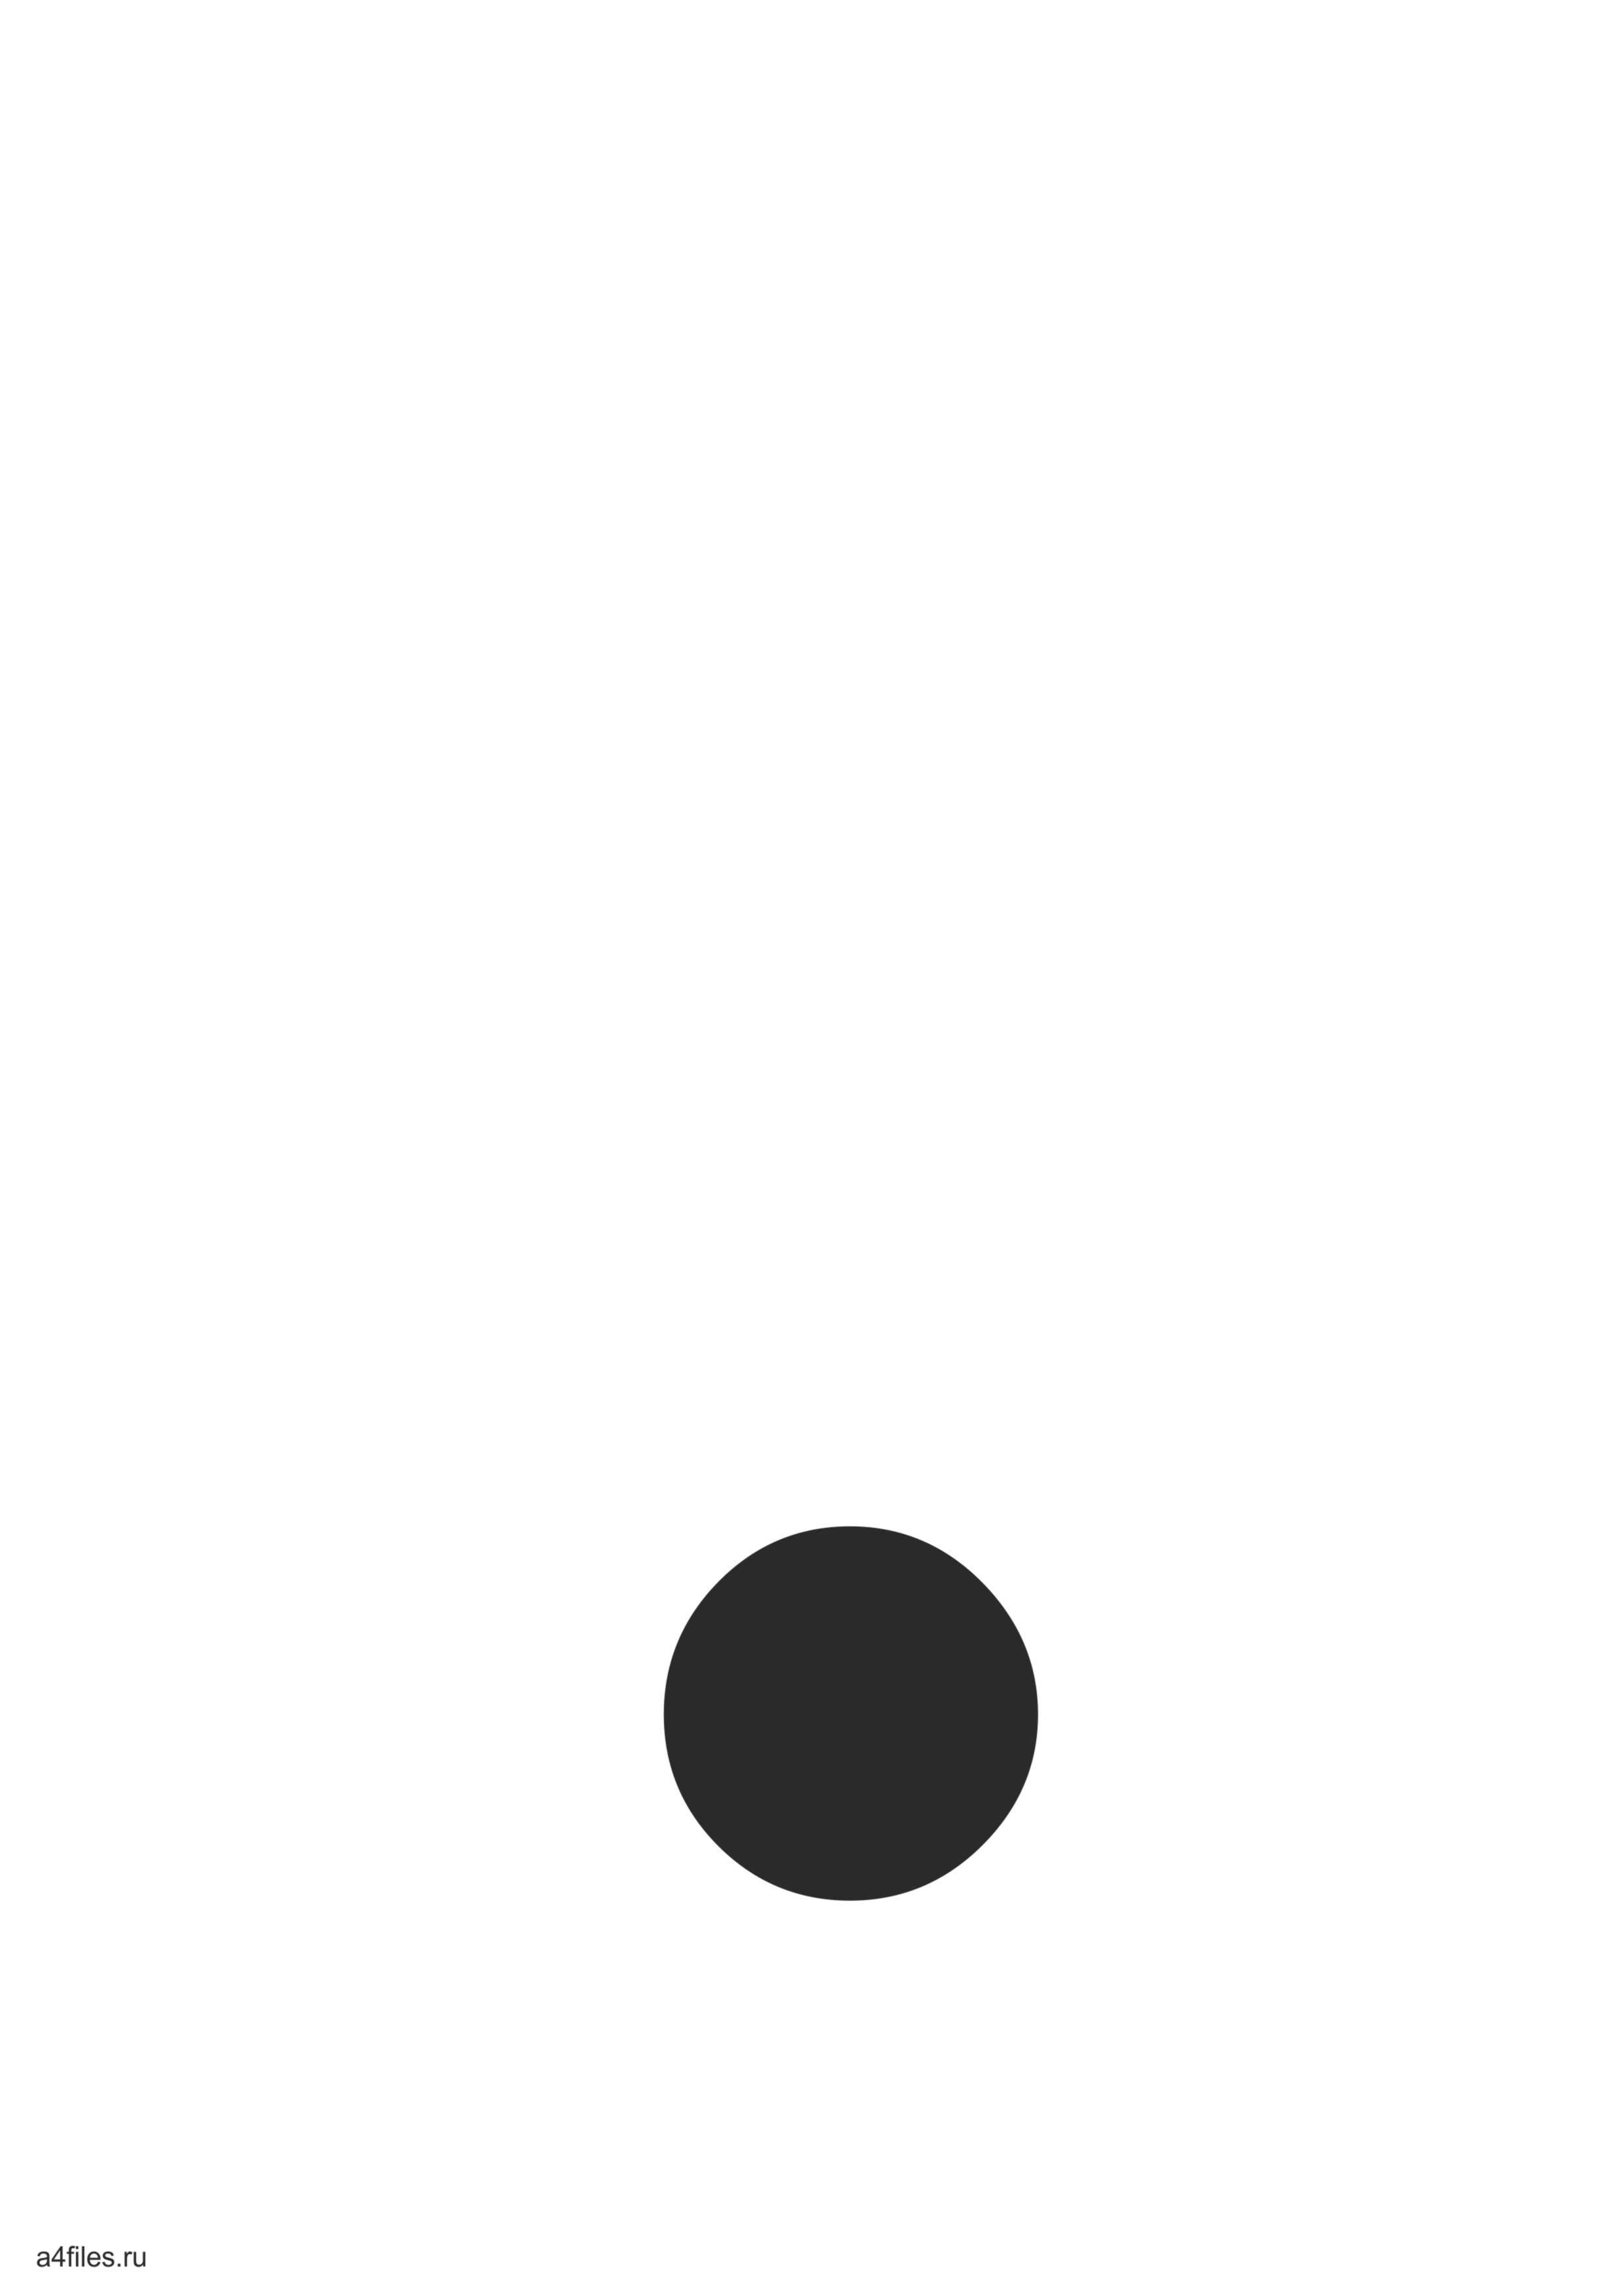 фото точка черного и белого